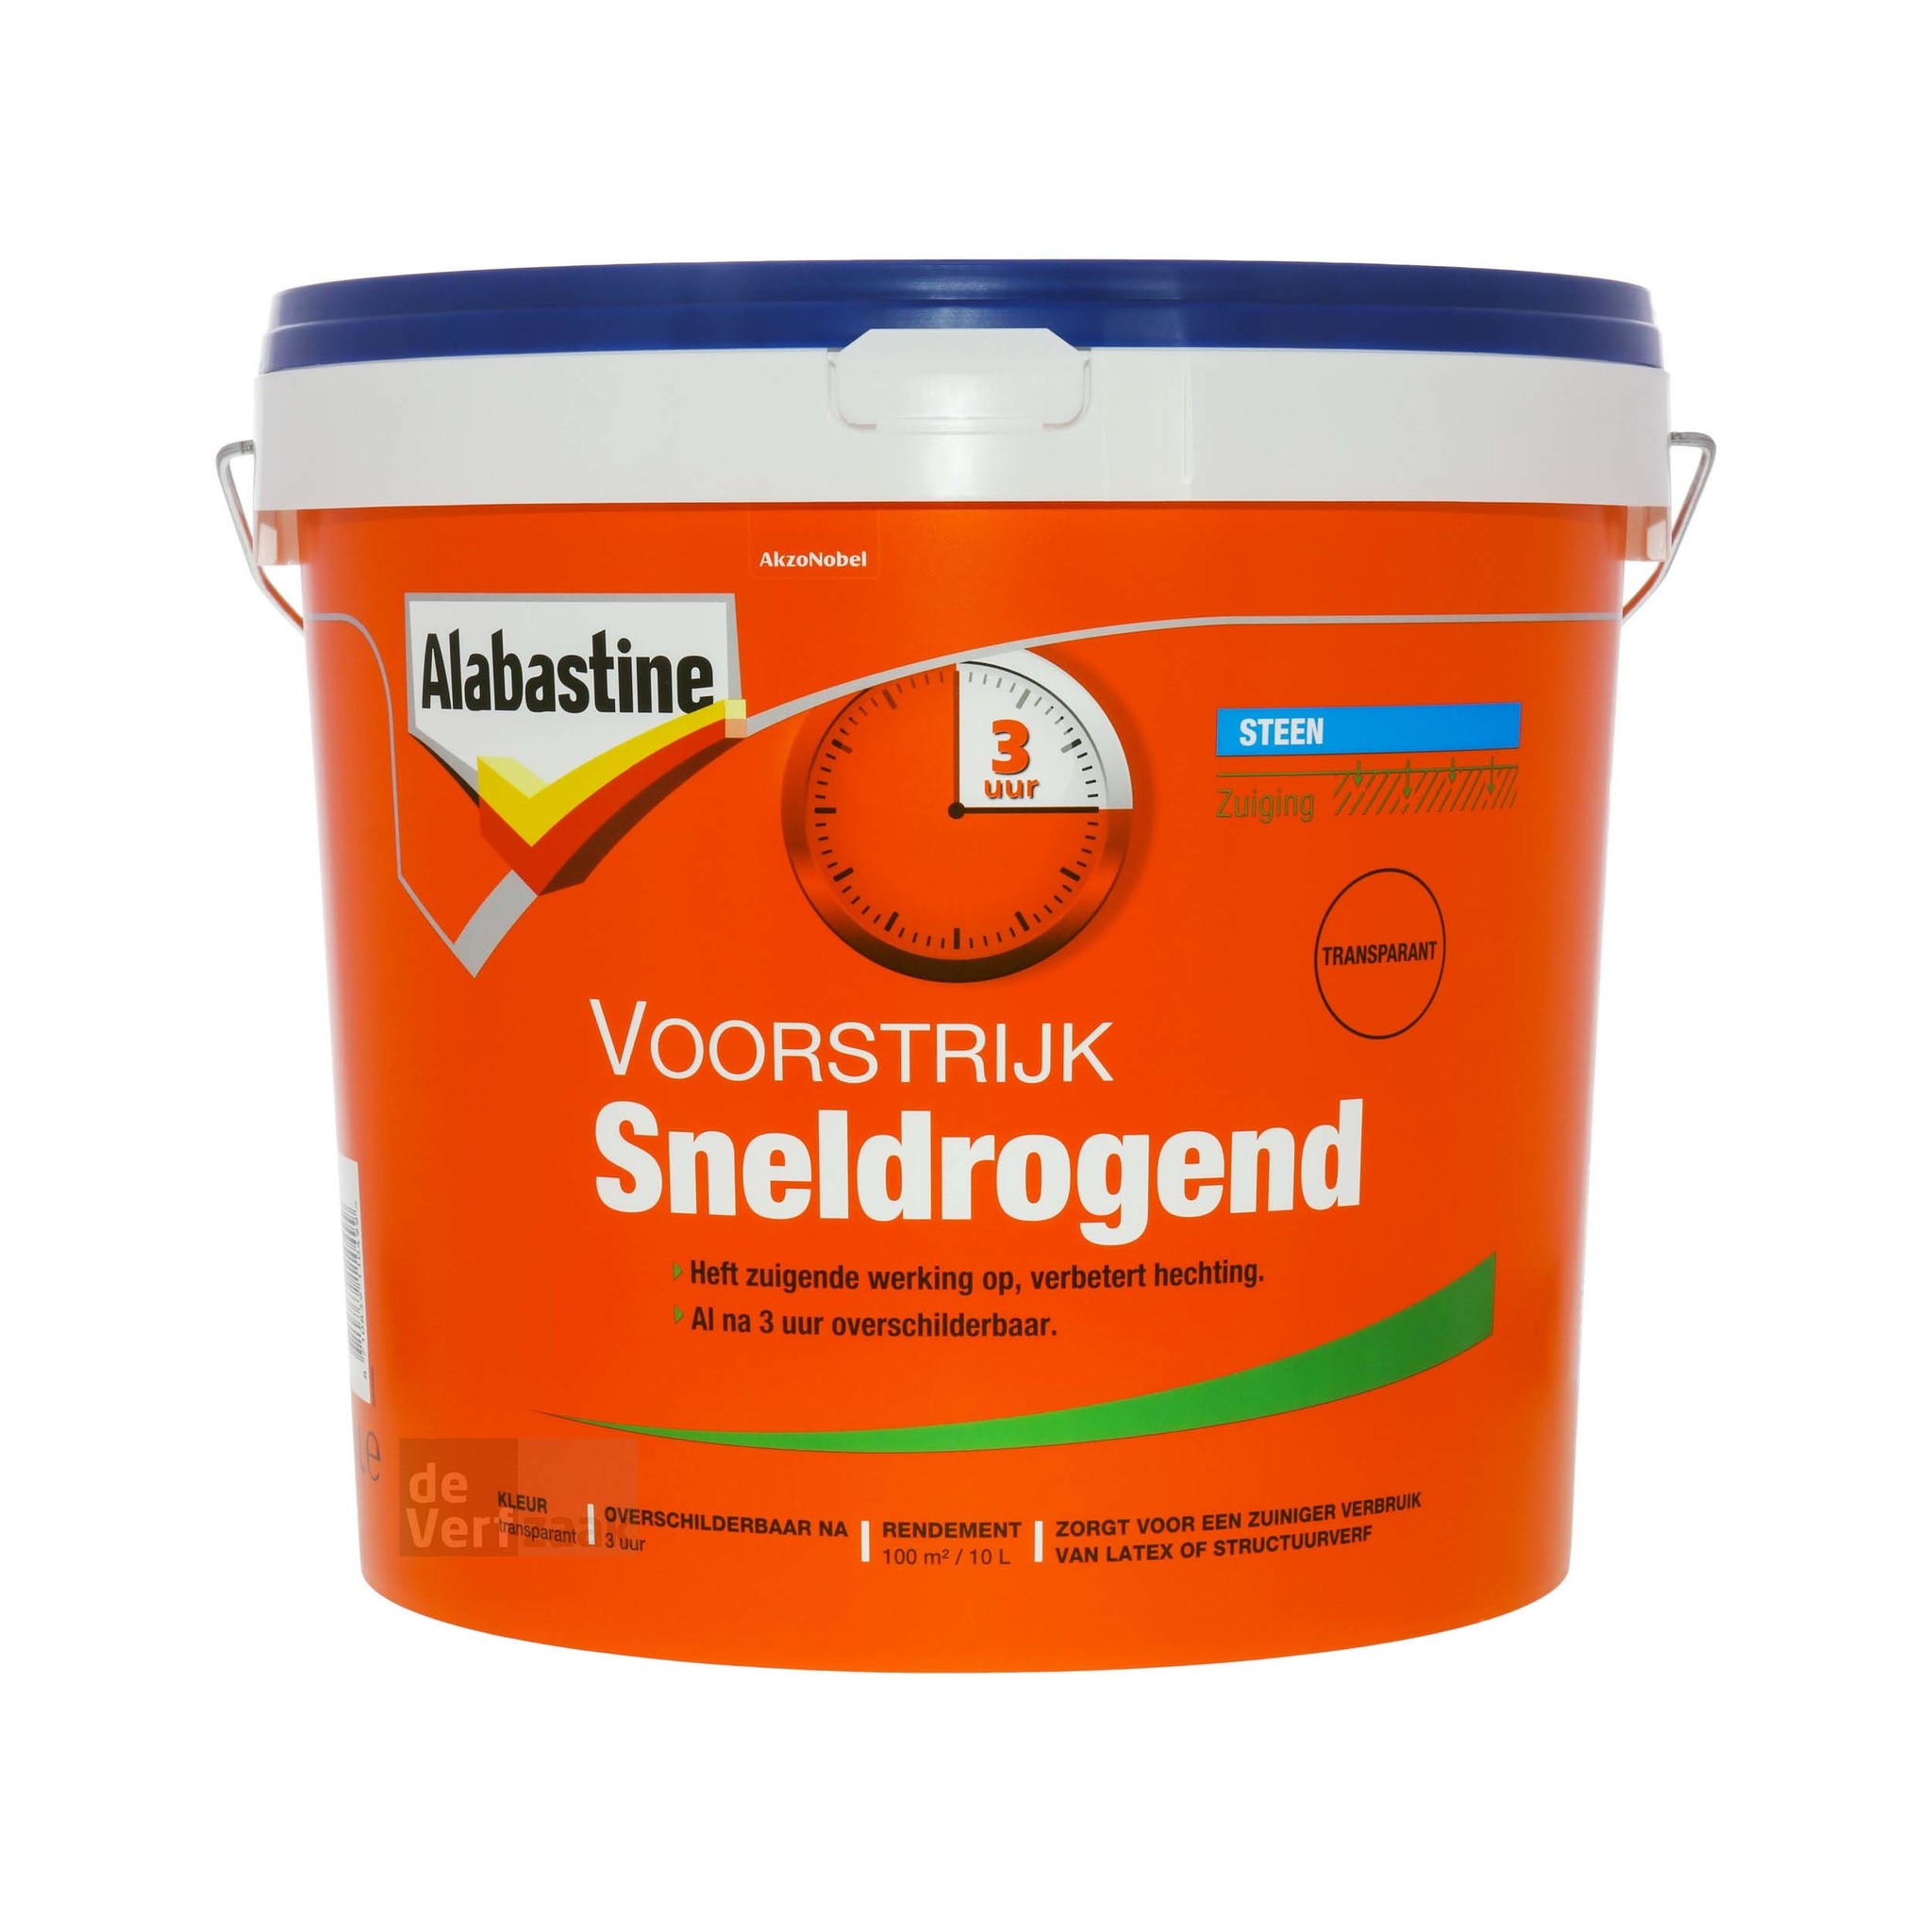 verdwijnen zuur Ongemak Alabastine Voorstrijk Sneldrogend - 10 liter kopen? | Korting tot 40% - De  Verfzaak